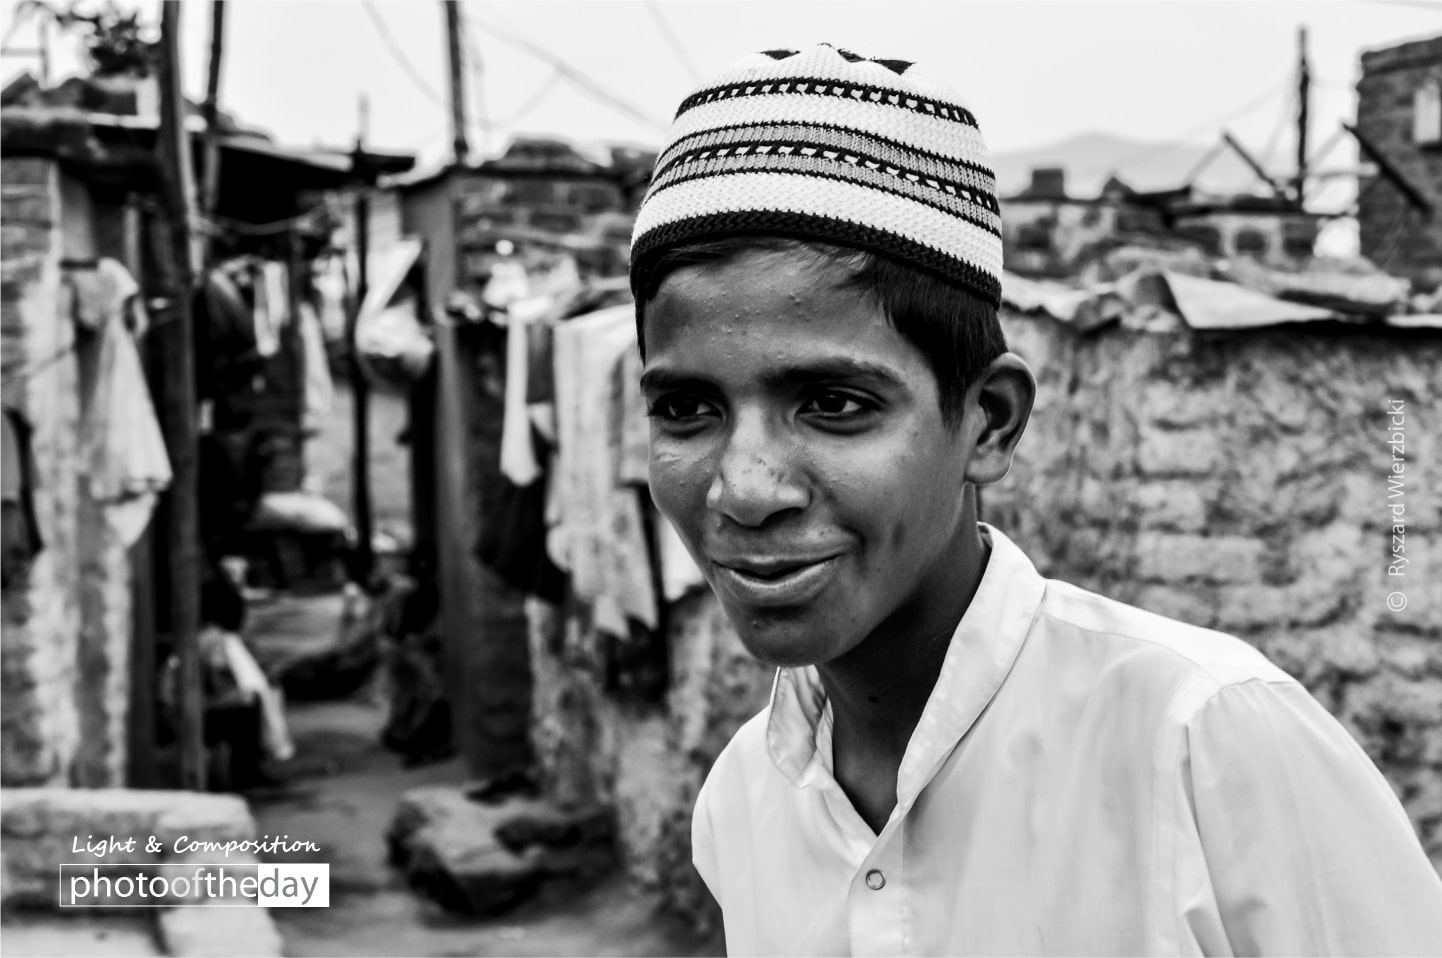 A Boy from Pune by Ryszard Wierzbicki